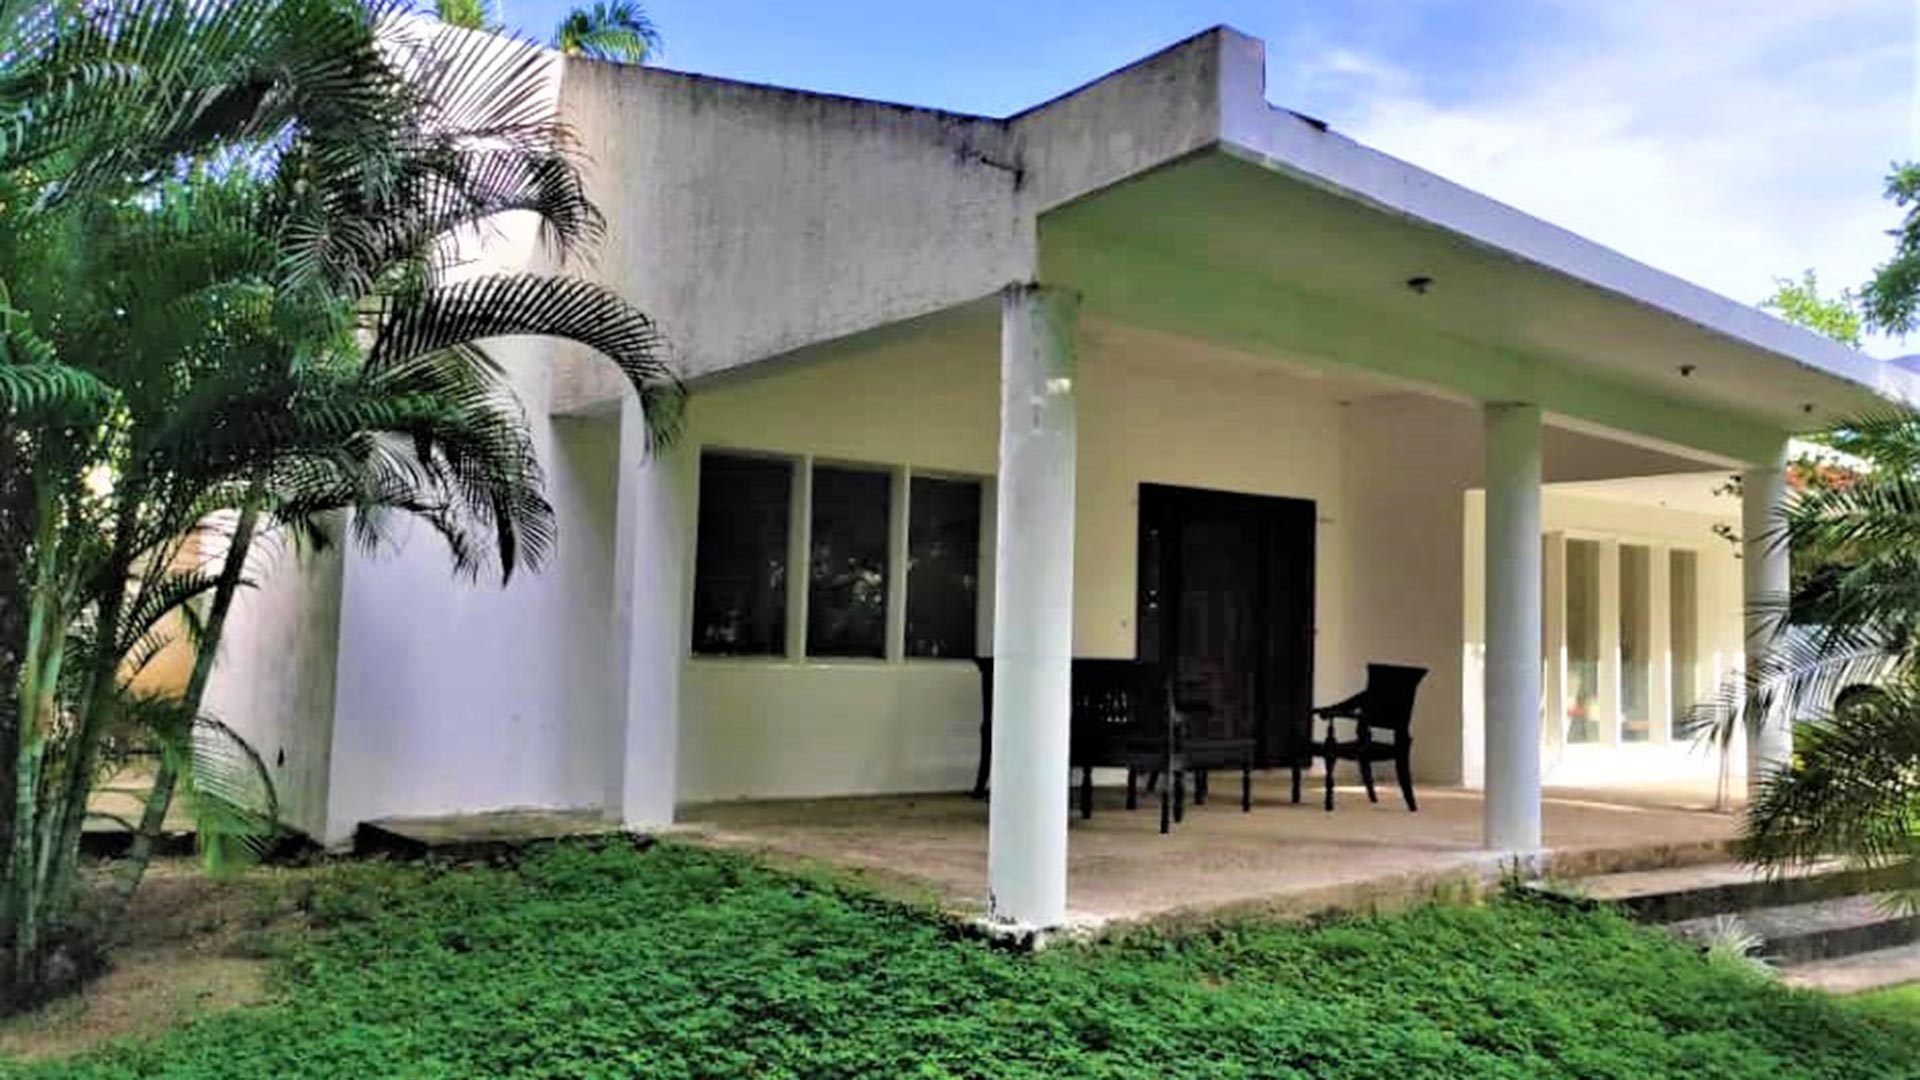 La espectacular residencia  ubicada en la calle Boca de Guerra, municipio Biruaca, diagonal al motel El Bosque, en el estado Apure